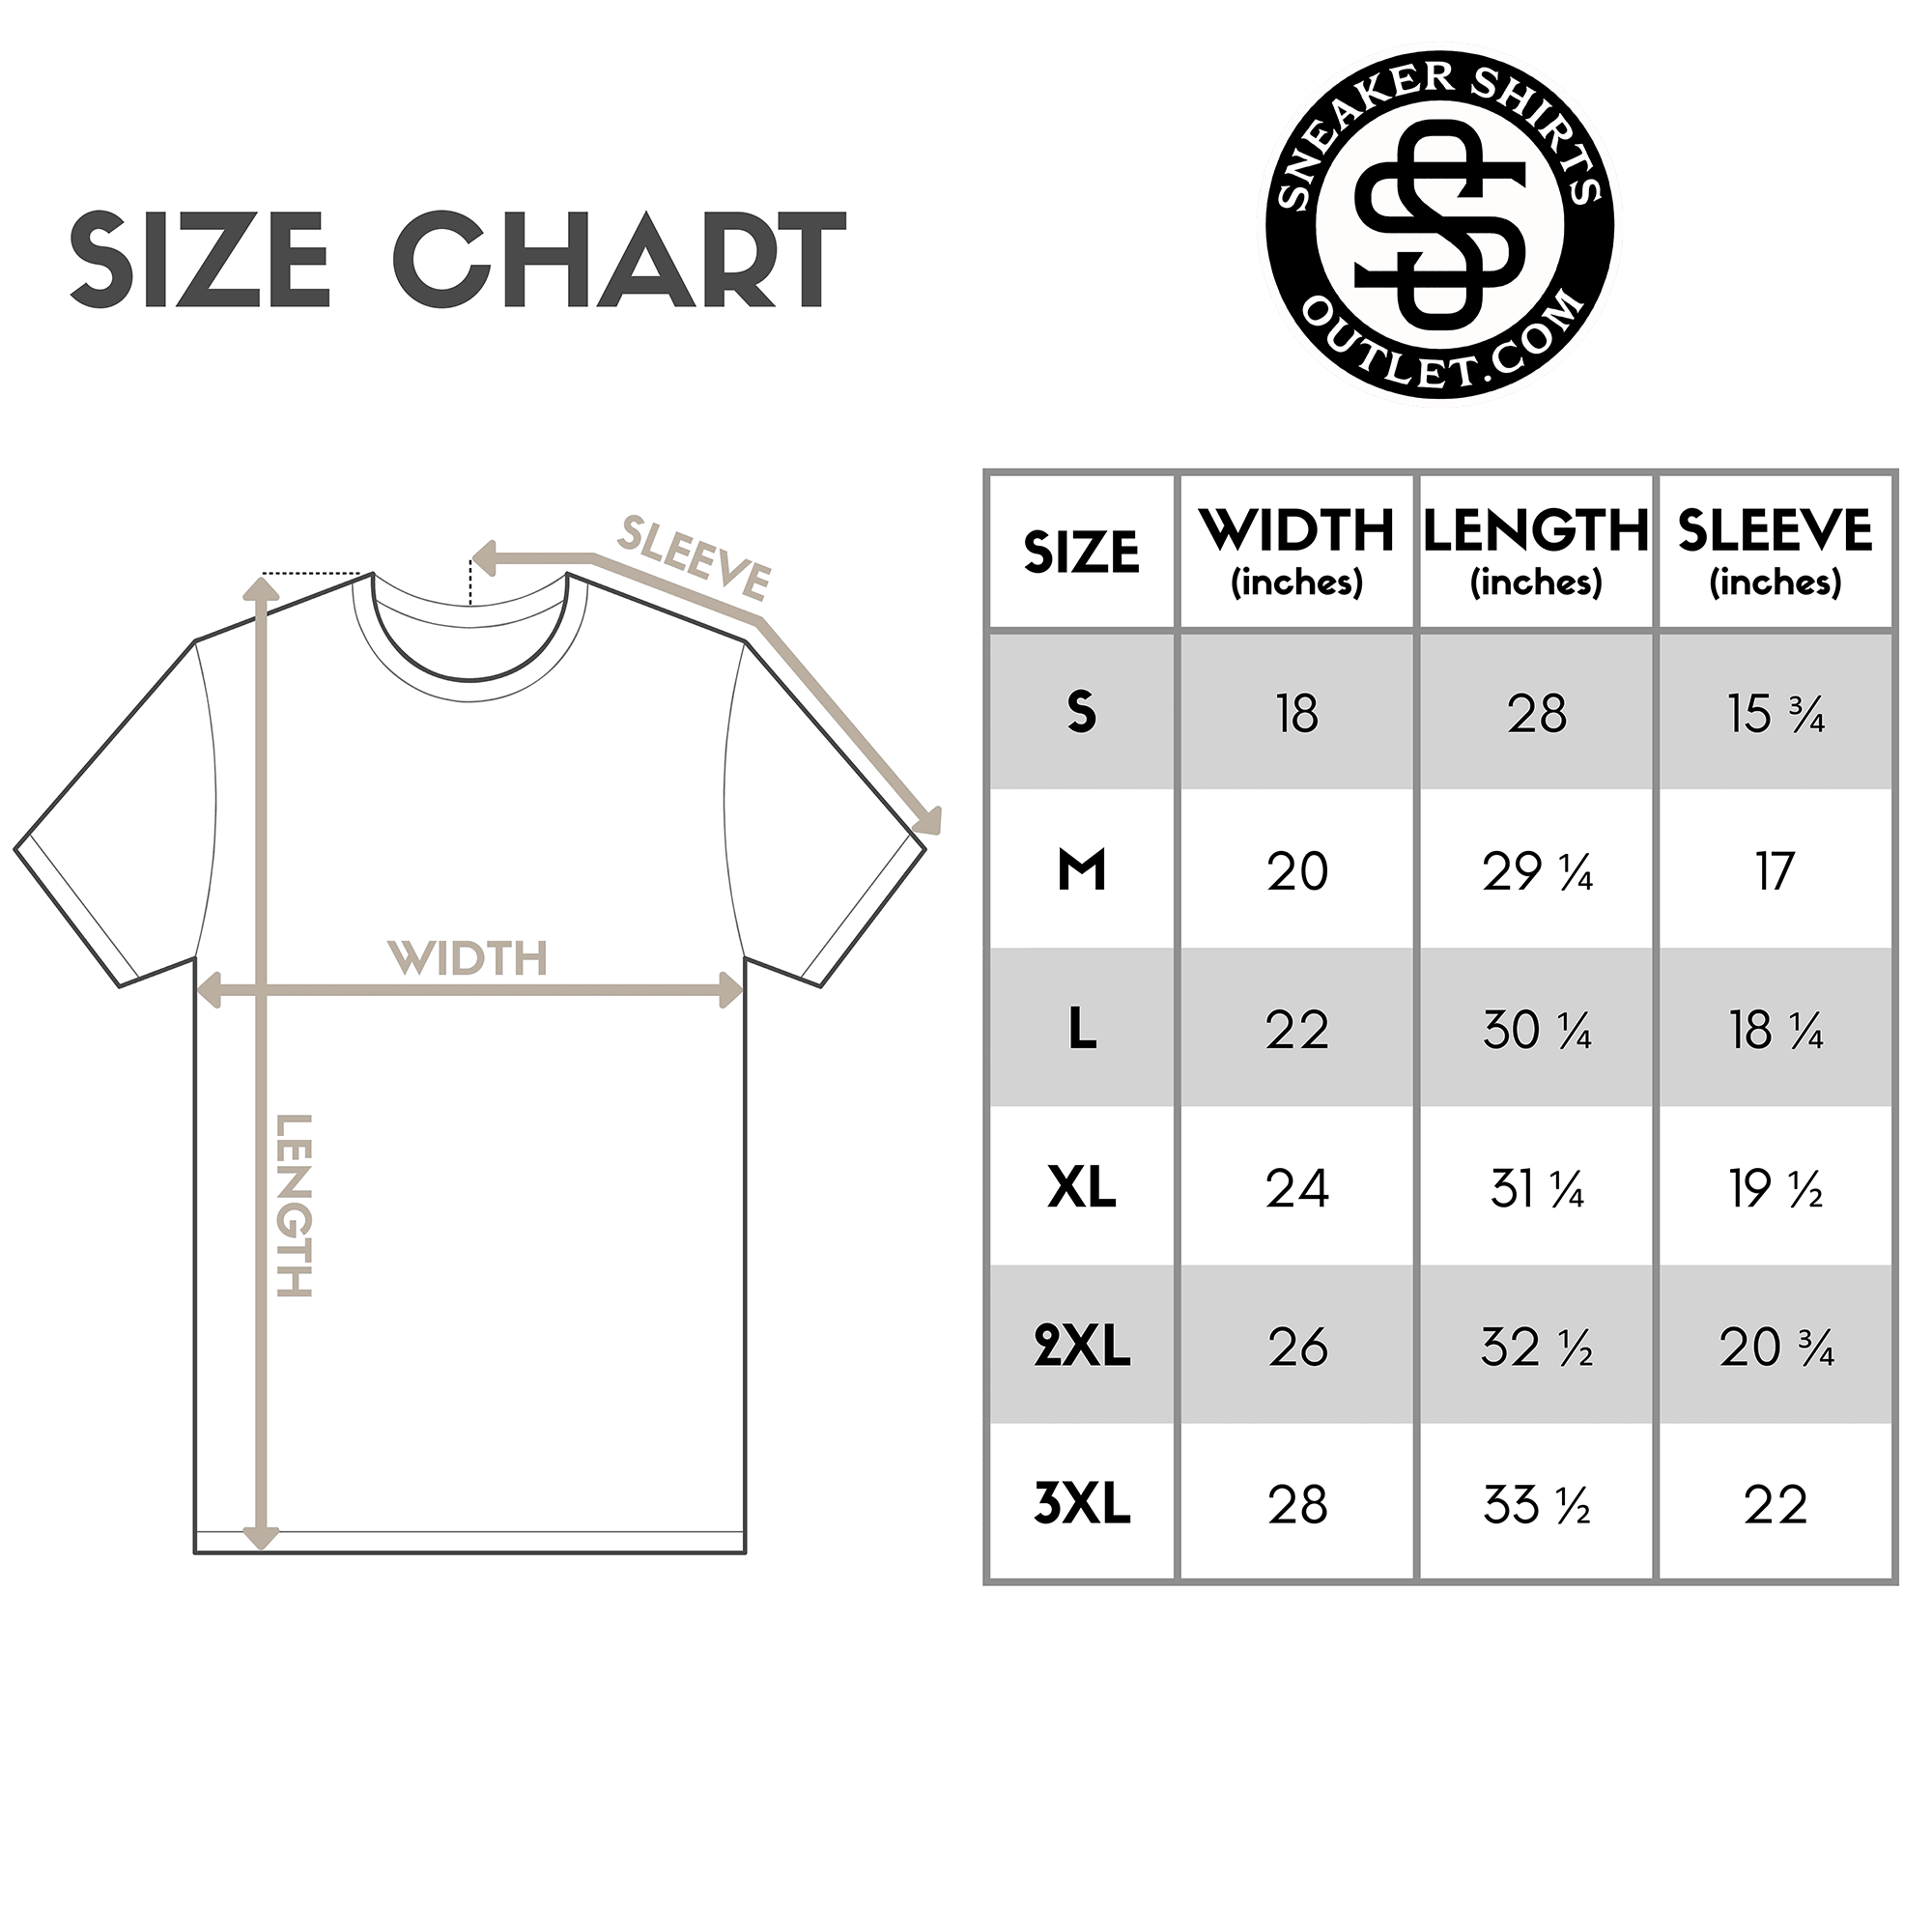 Gorilla Beast Shirt size chart photo